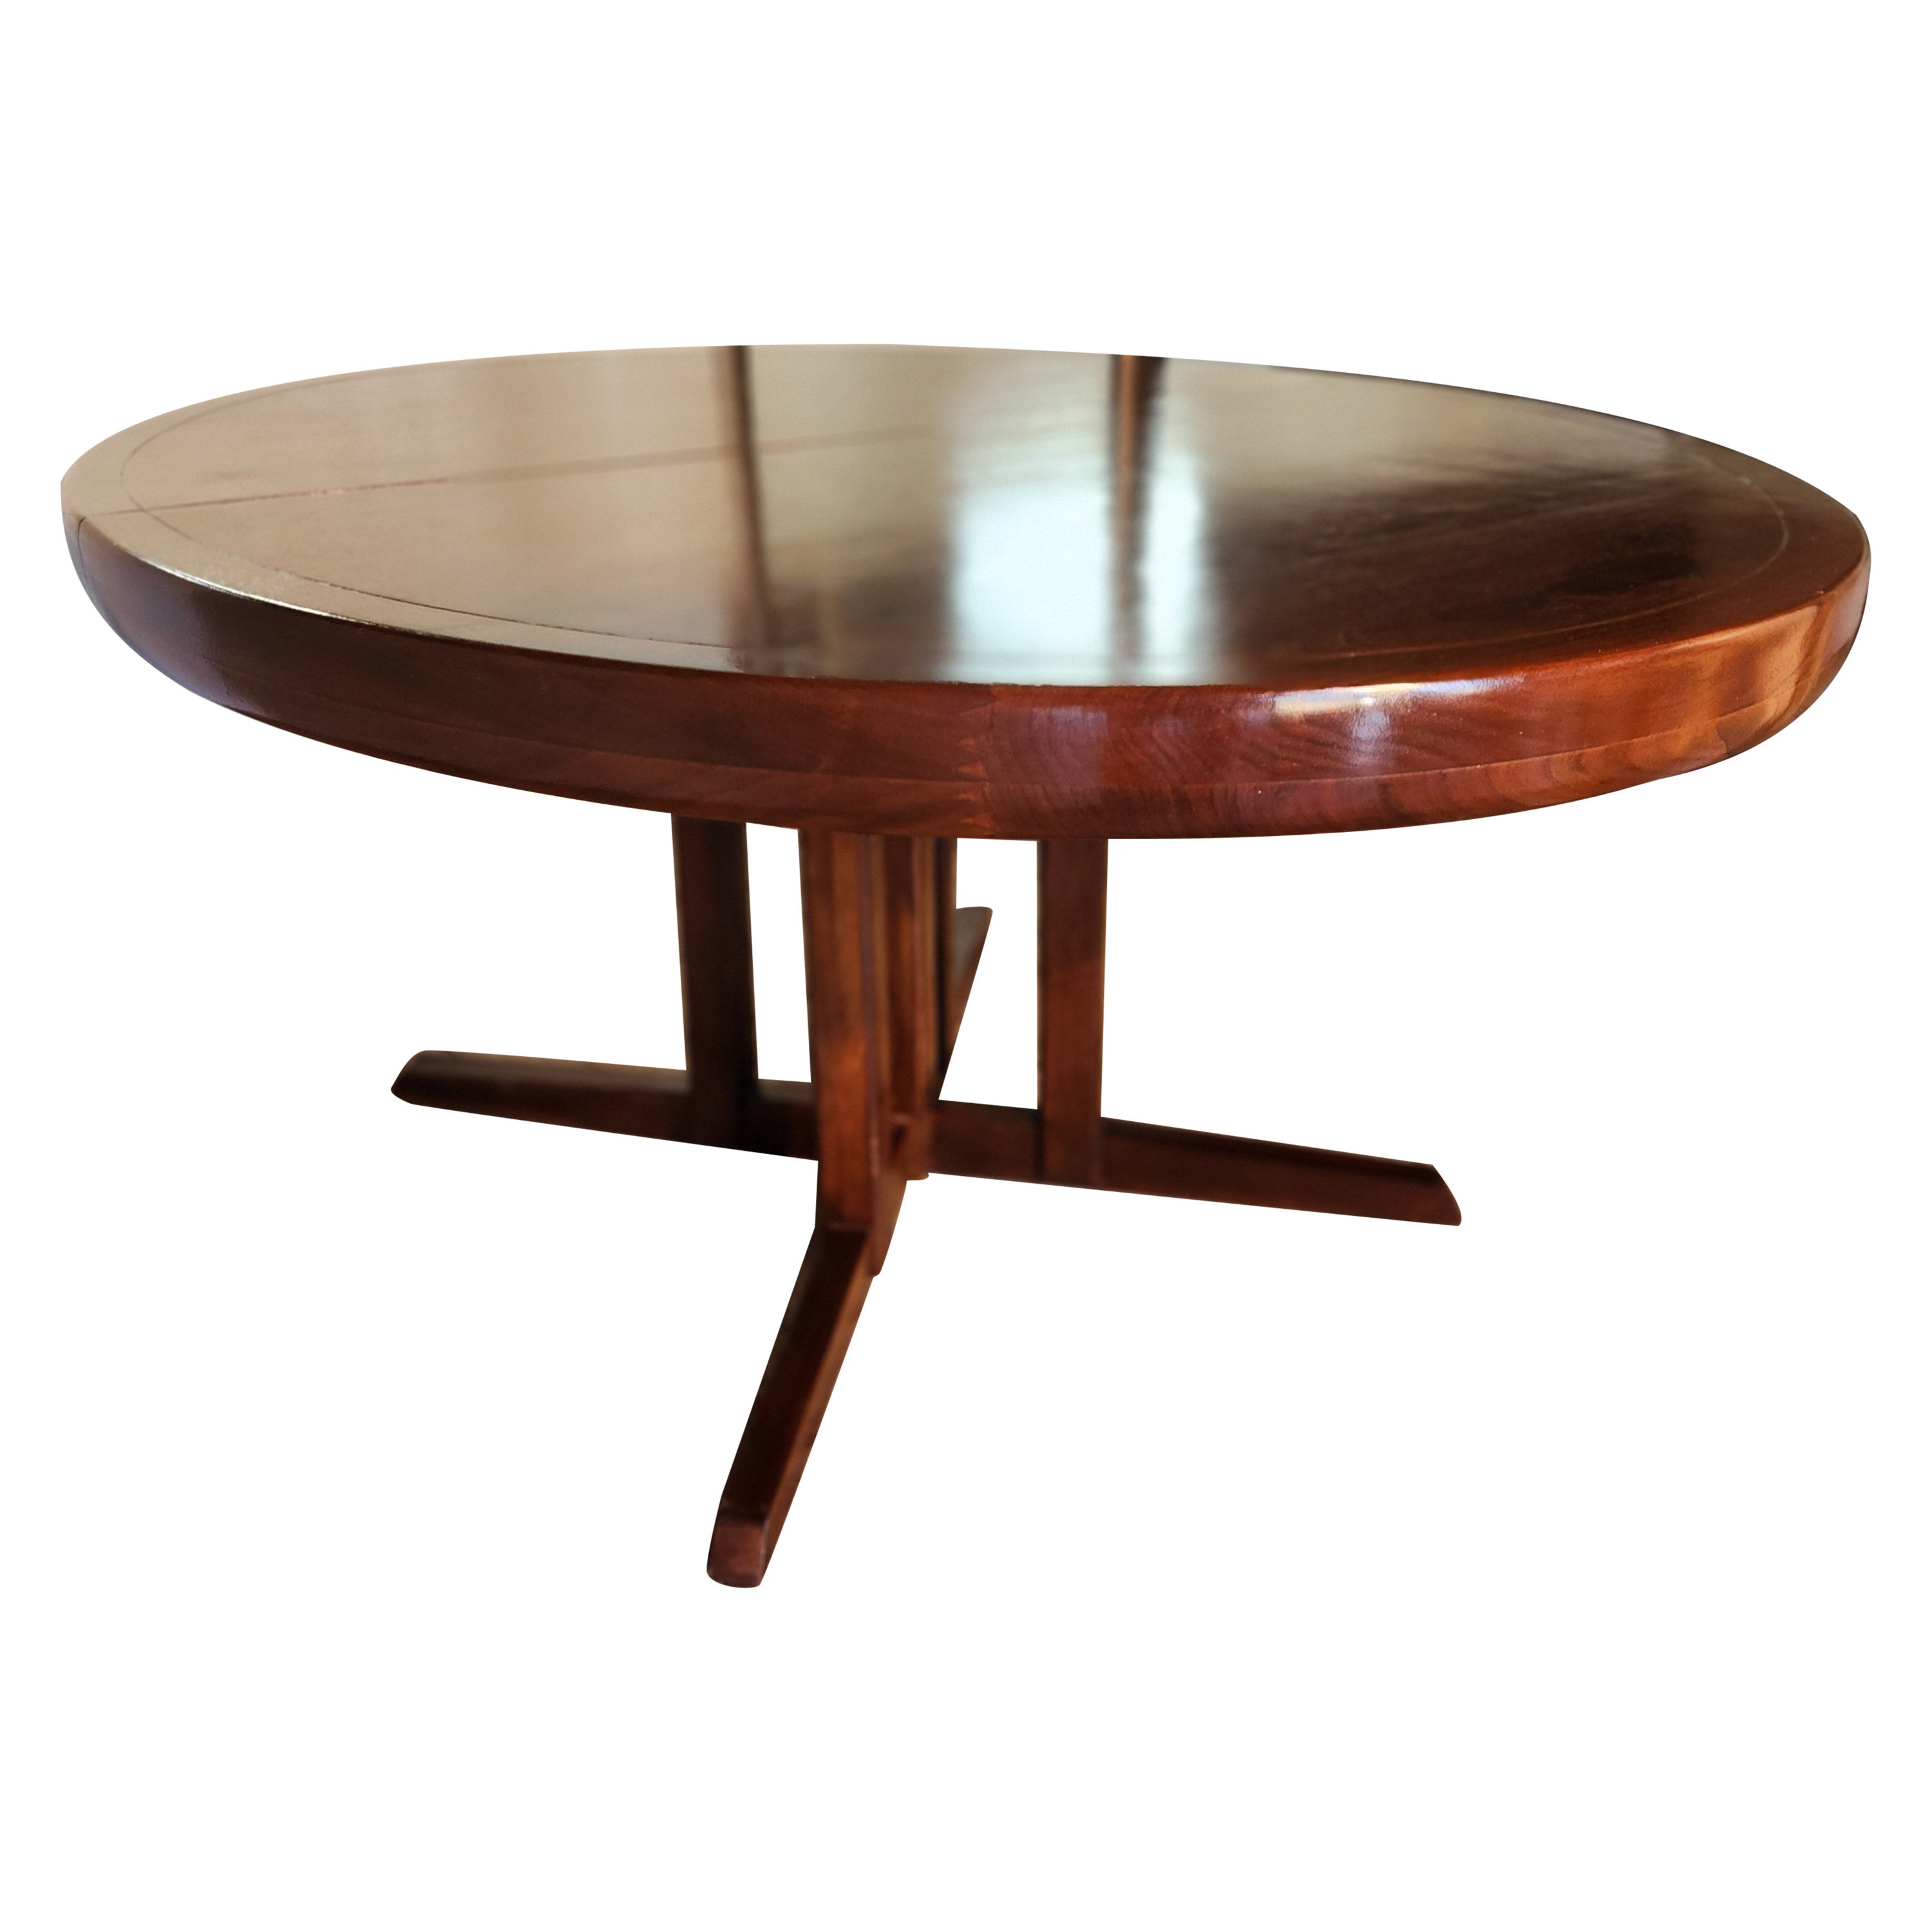 Ein ausziehbarer Esstisch aus Nussbaumholz von George Nakashima für Widdicomb Furniture Company aus dem Jahr 1959.
Die Tischplatte besteht aus einer Reihe von aufeinander abgestimmten Furnieren, die von einer 3 Zoll tiefen, geschnitzten und